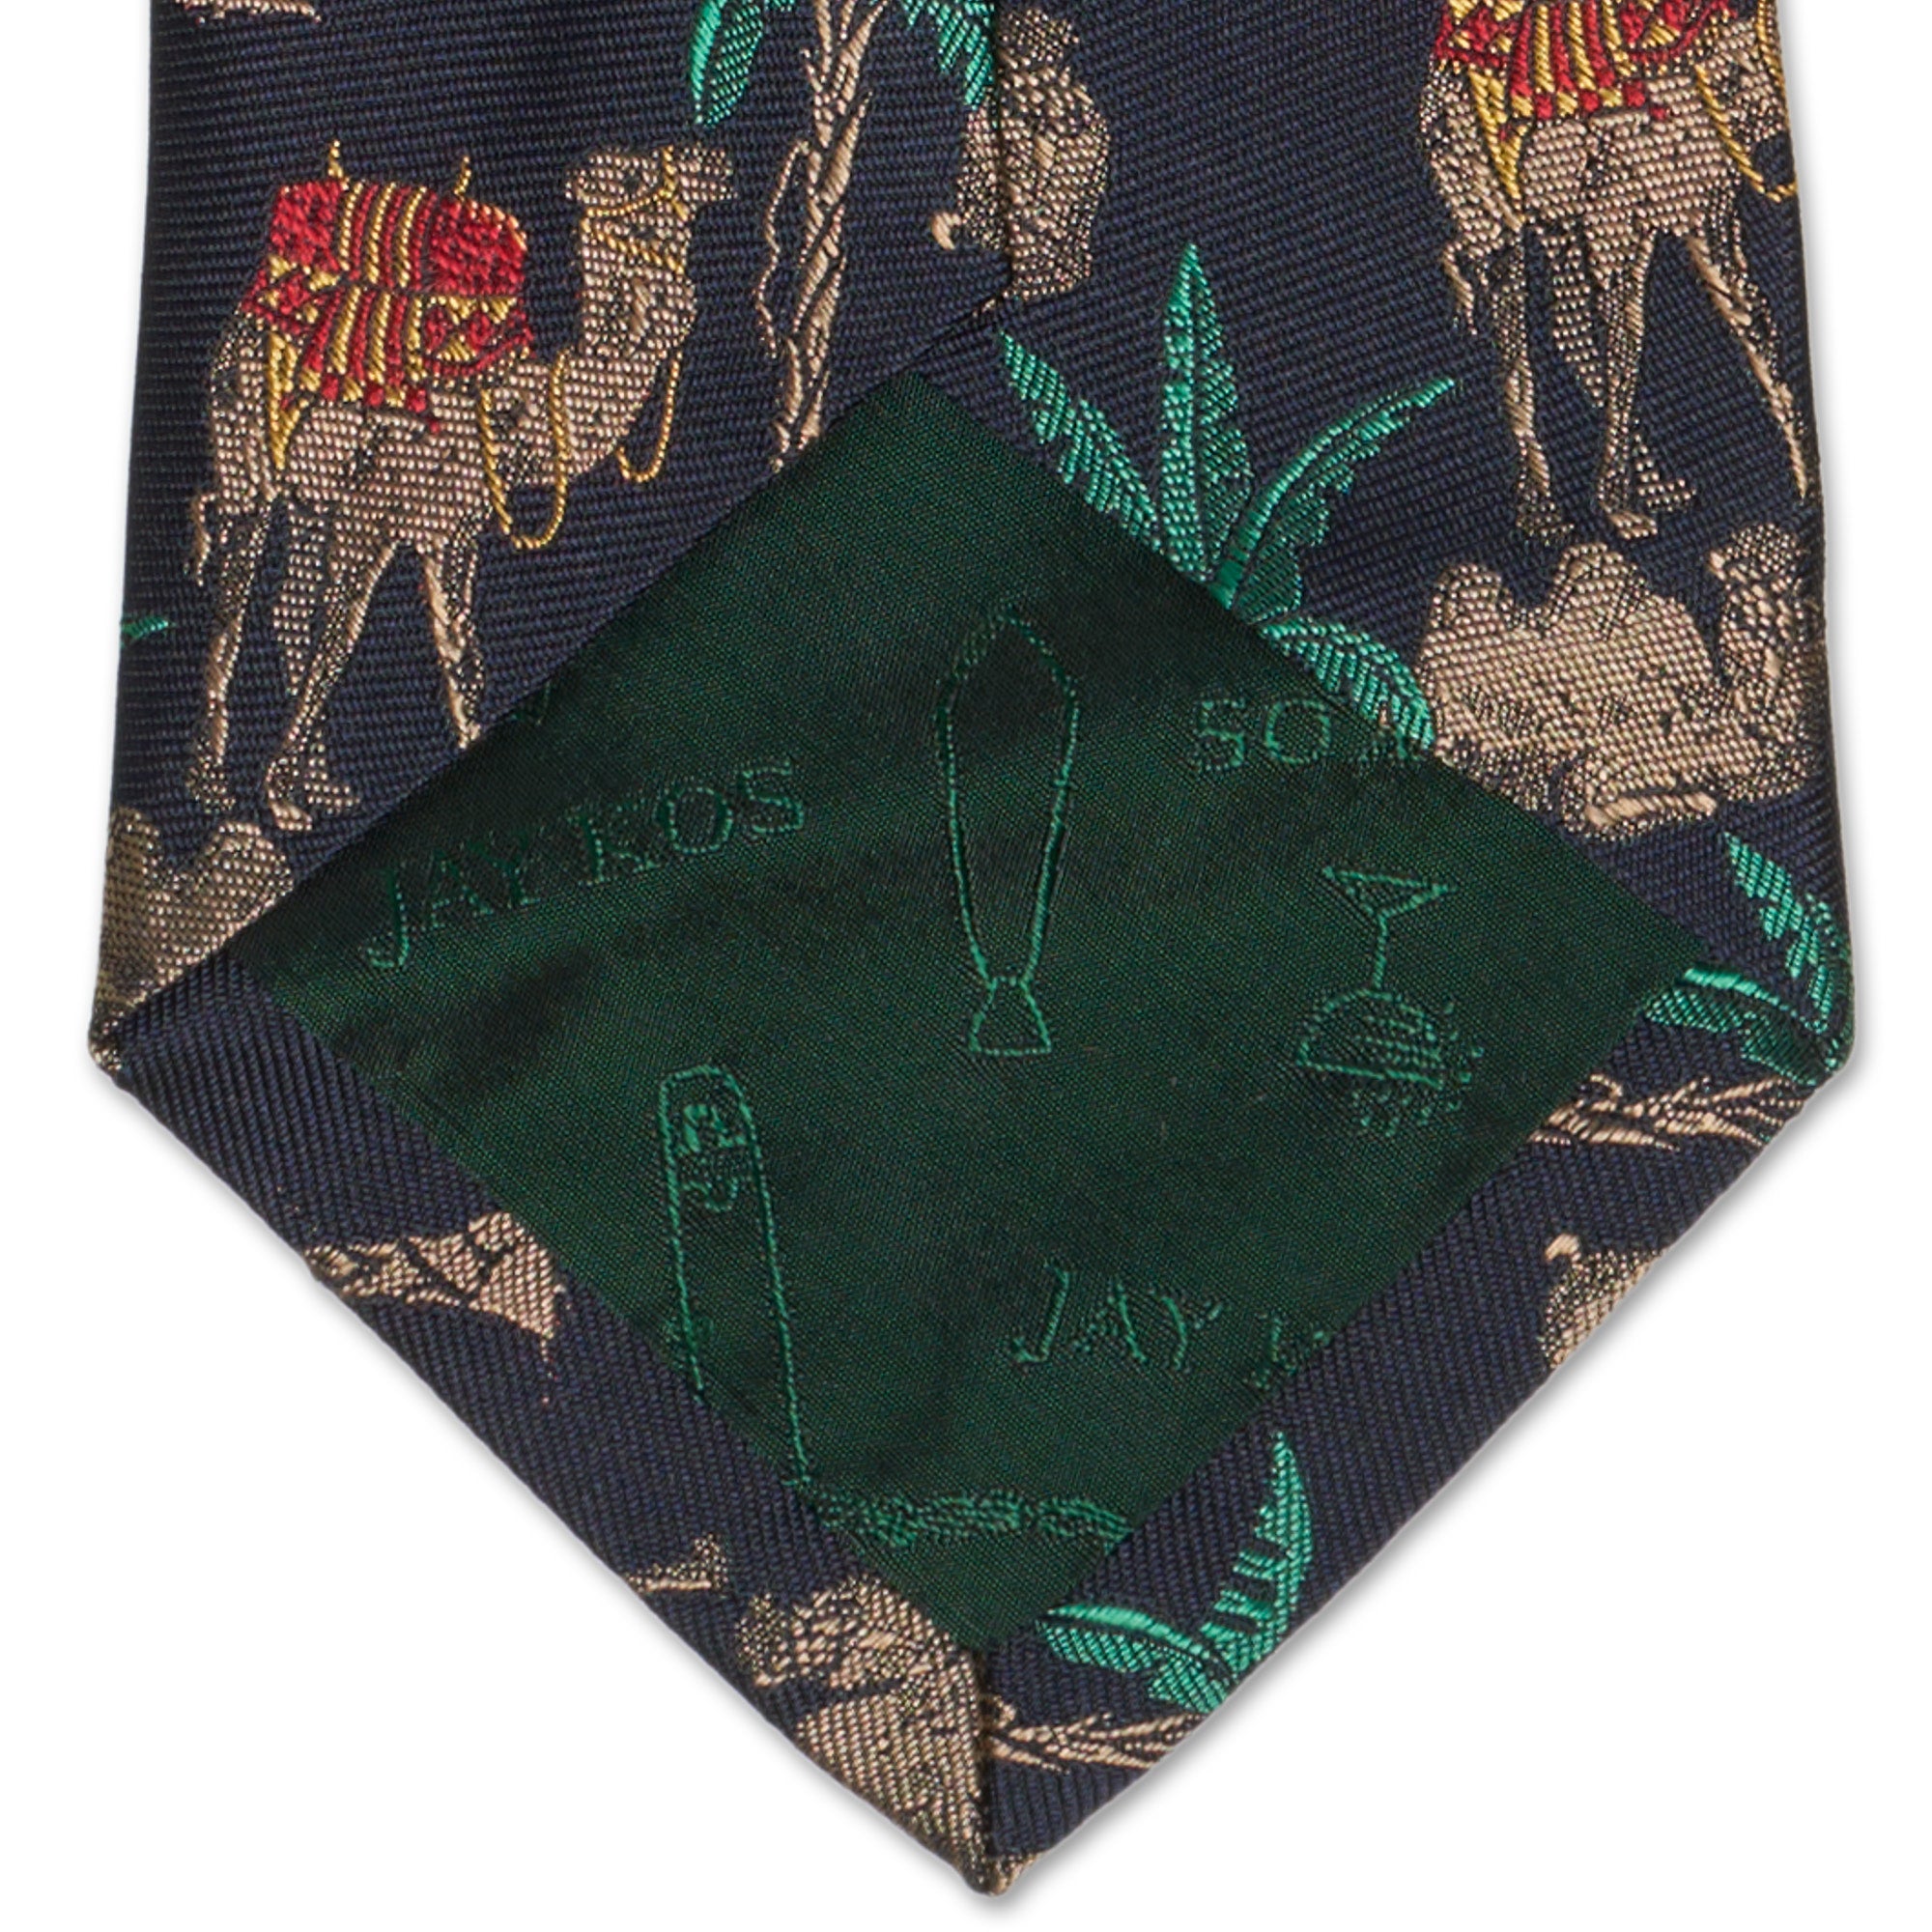 JAY KOS New York Handmade Navy Blue Camel Design Silk Tie